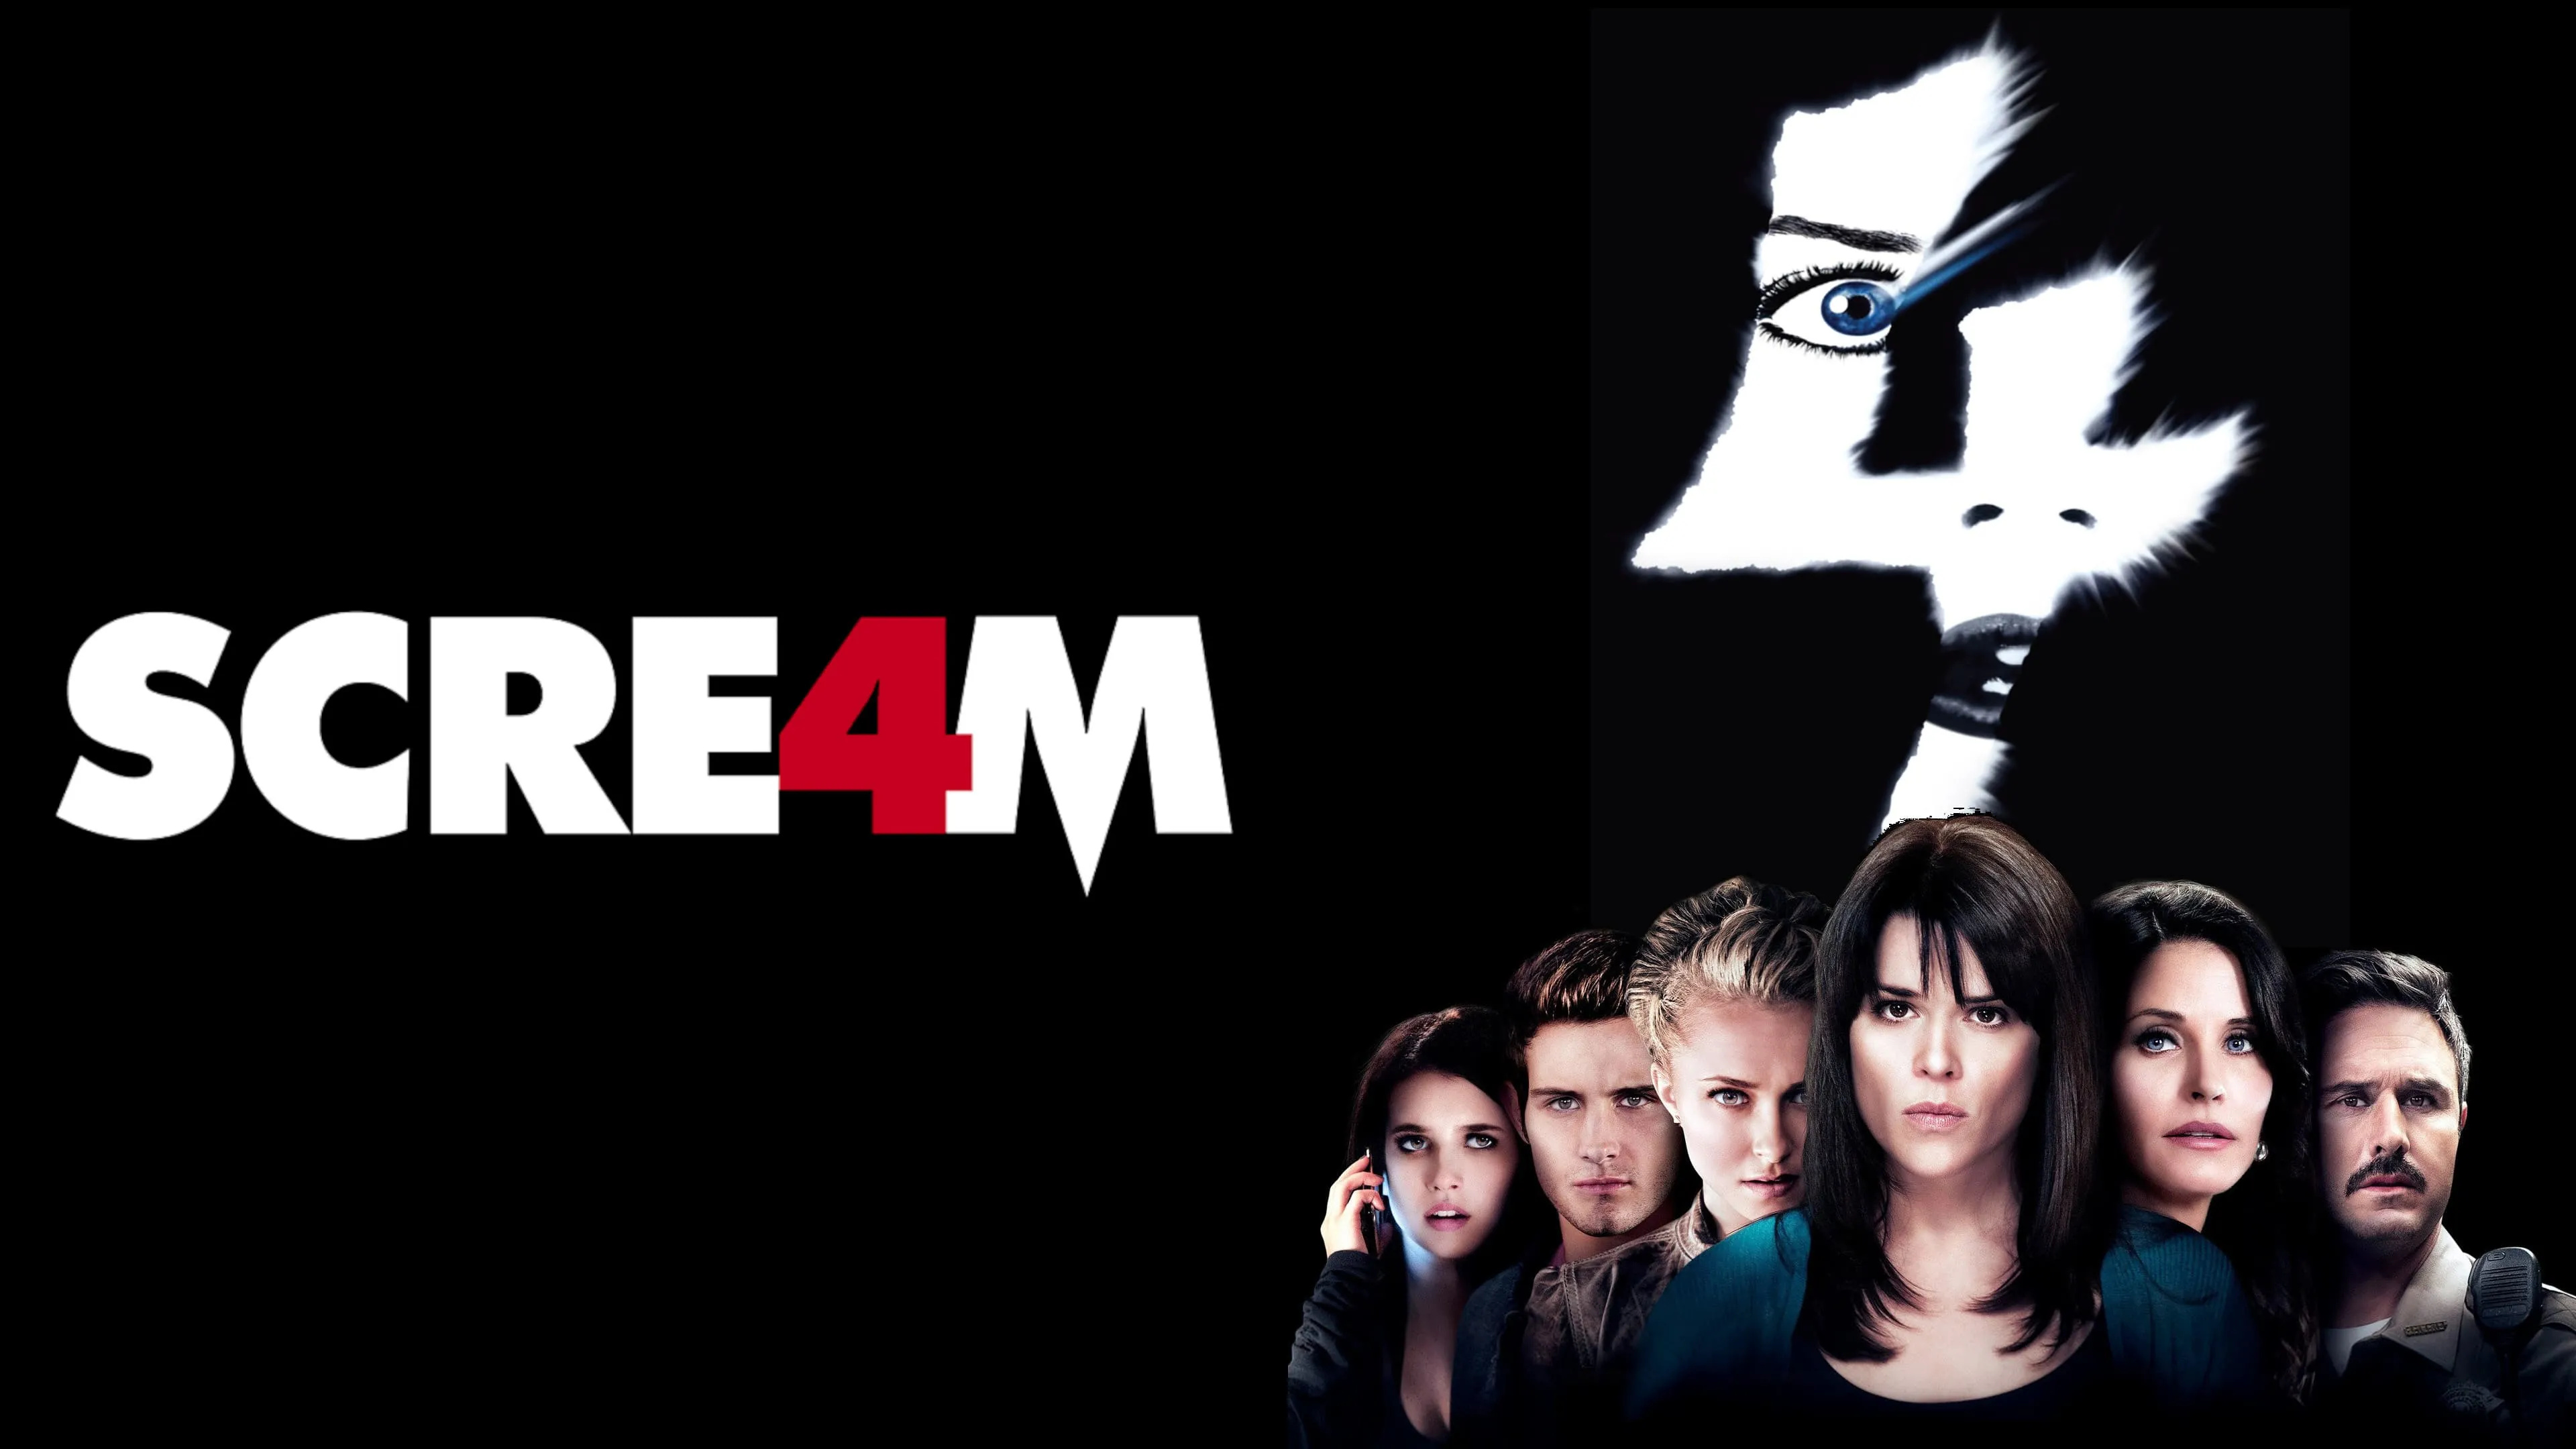 Neve Campbell, Scream 4, Full movie, Horror film, 3840x2160 4K Desktop